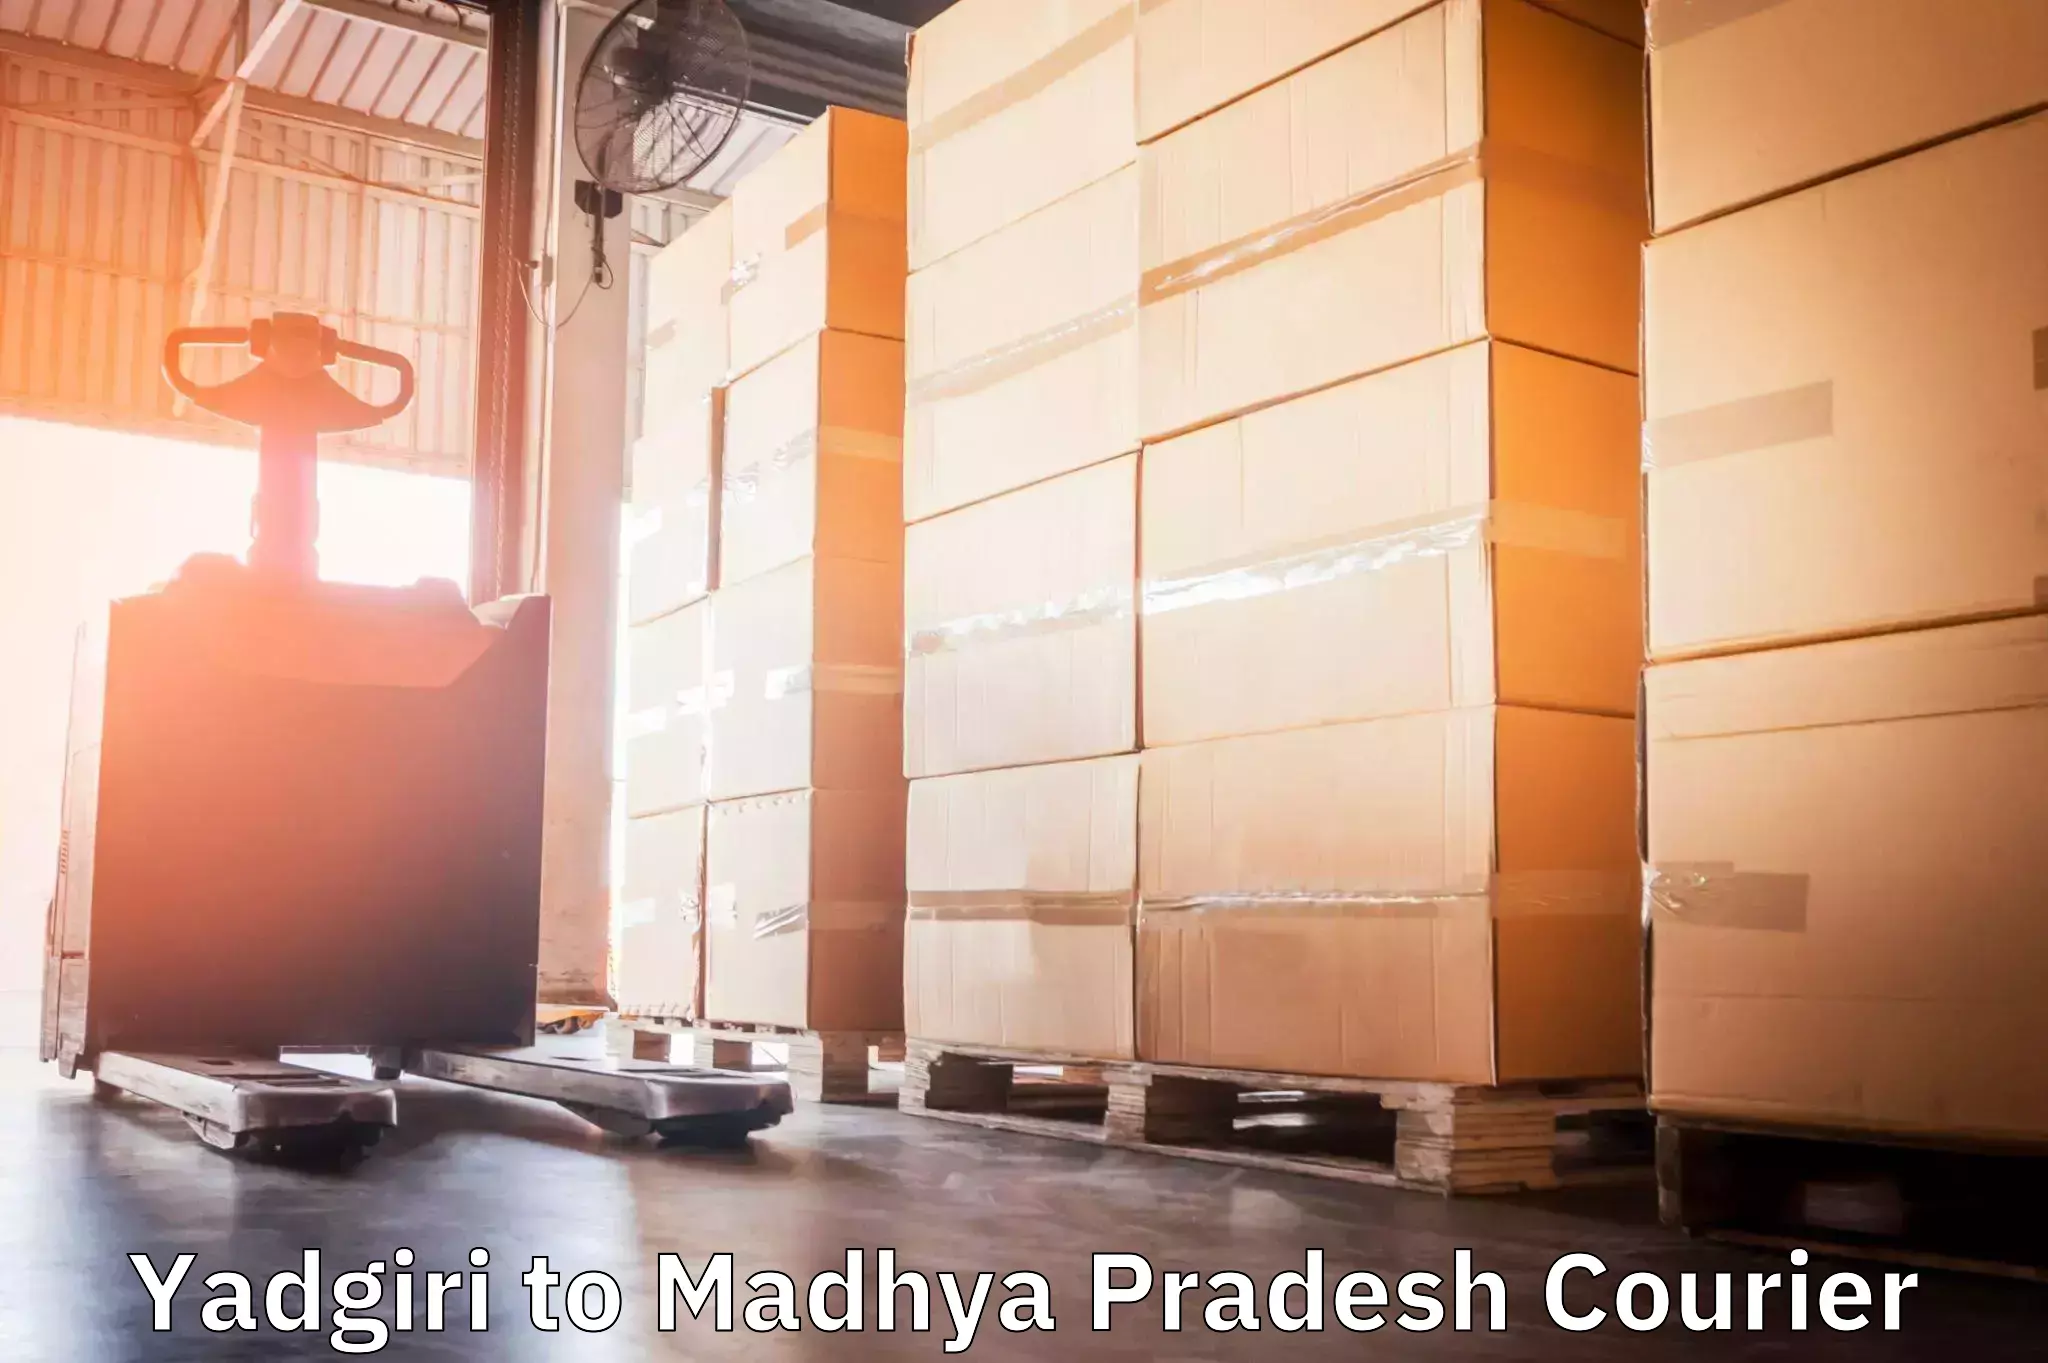 24-hour courier services Yadgiri to Dewas